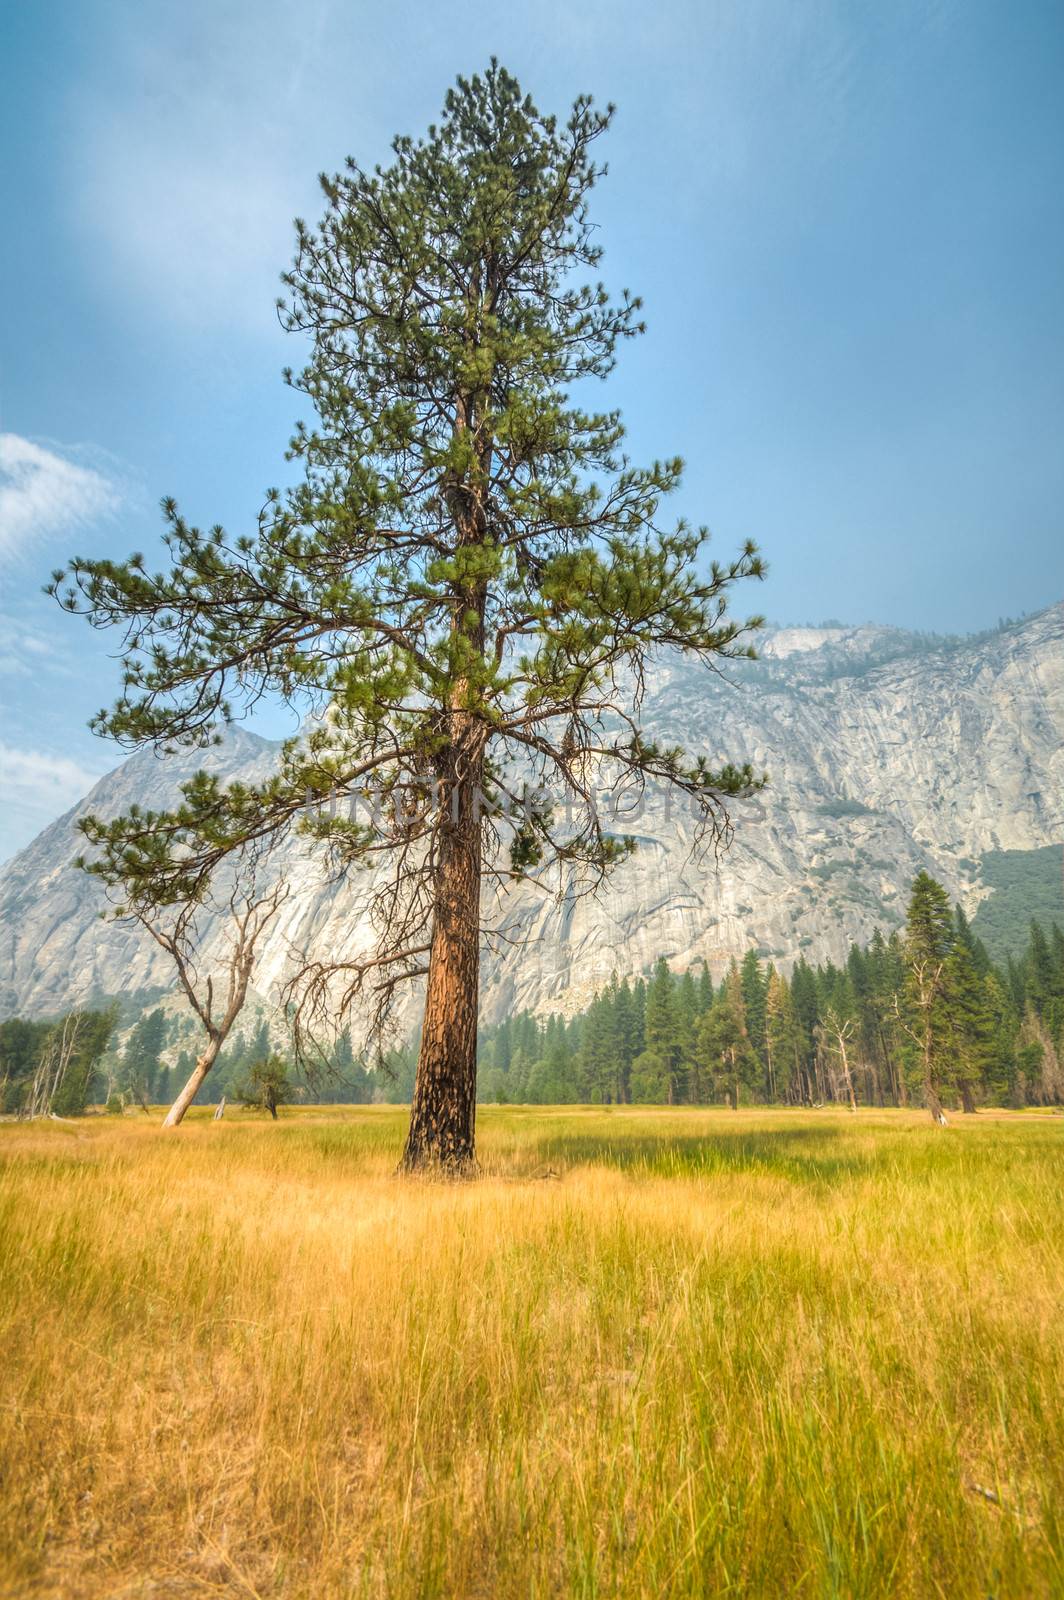 Yosemite lonley tree by weltreisendertj